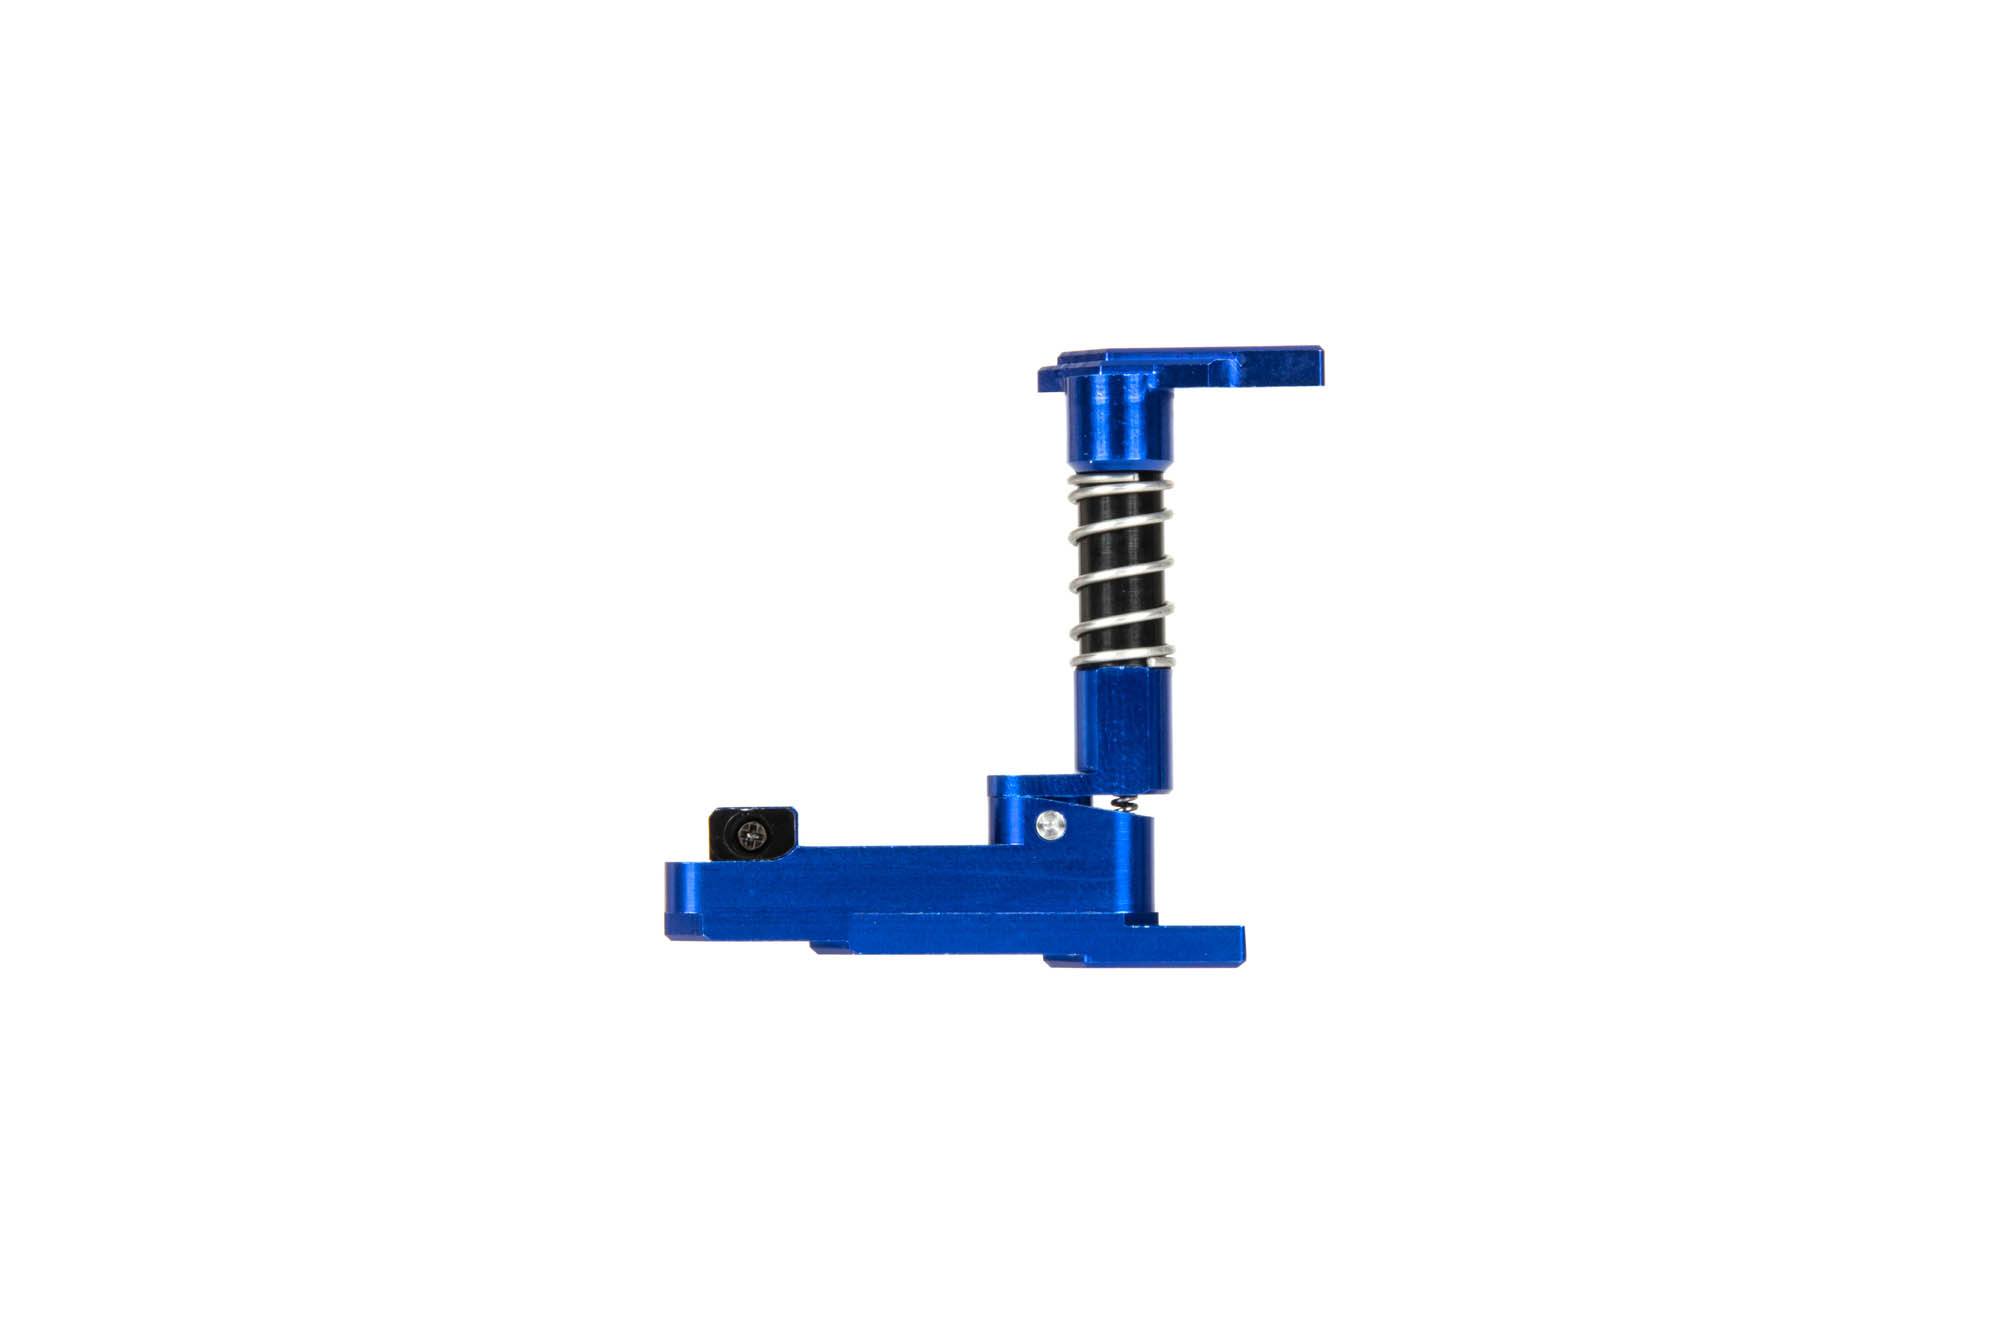 CNC M4/M16 (A) mag release ambidextrous - Blue